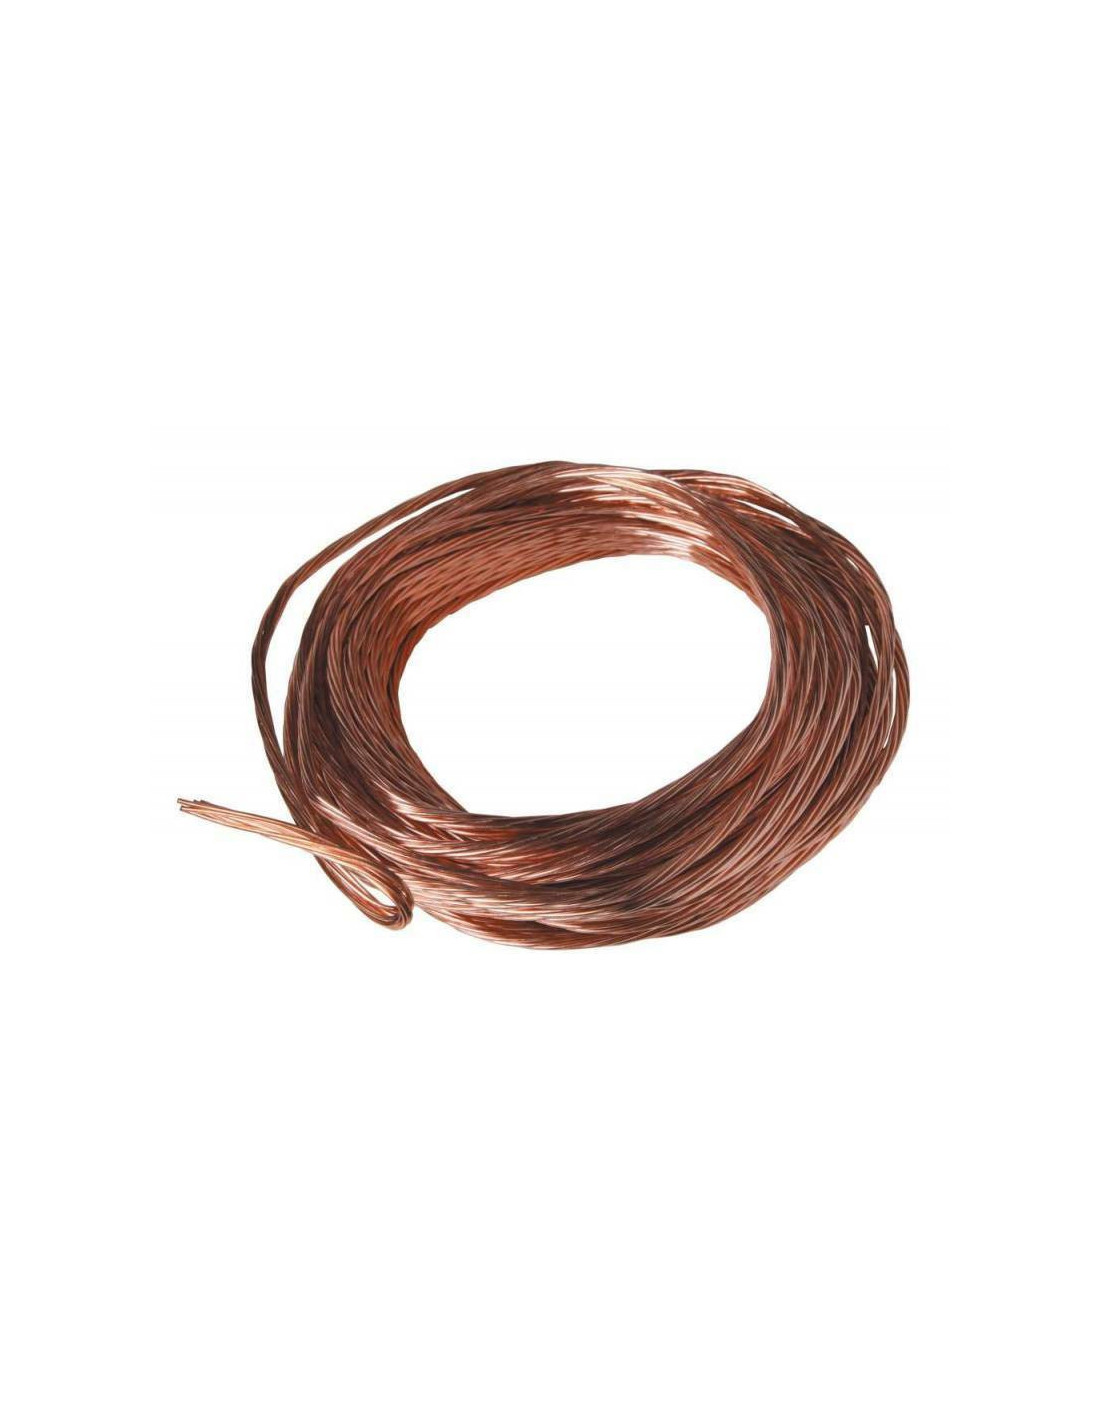 Cable de terre en cuivre nu 25mm2 (prix au m)